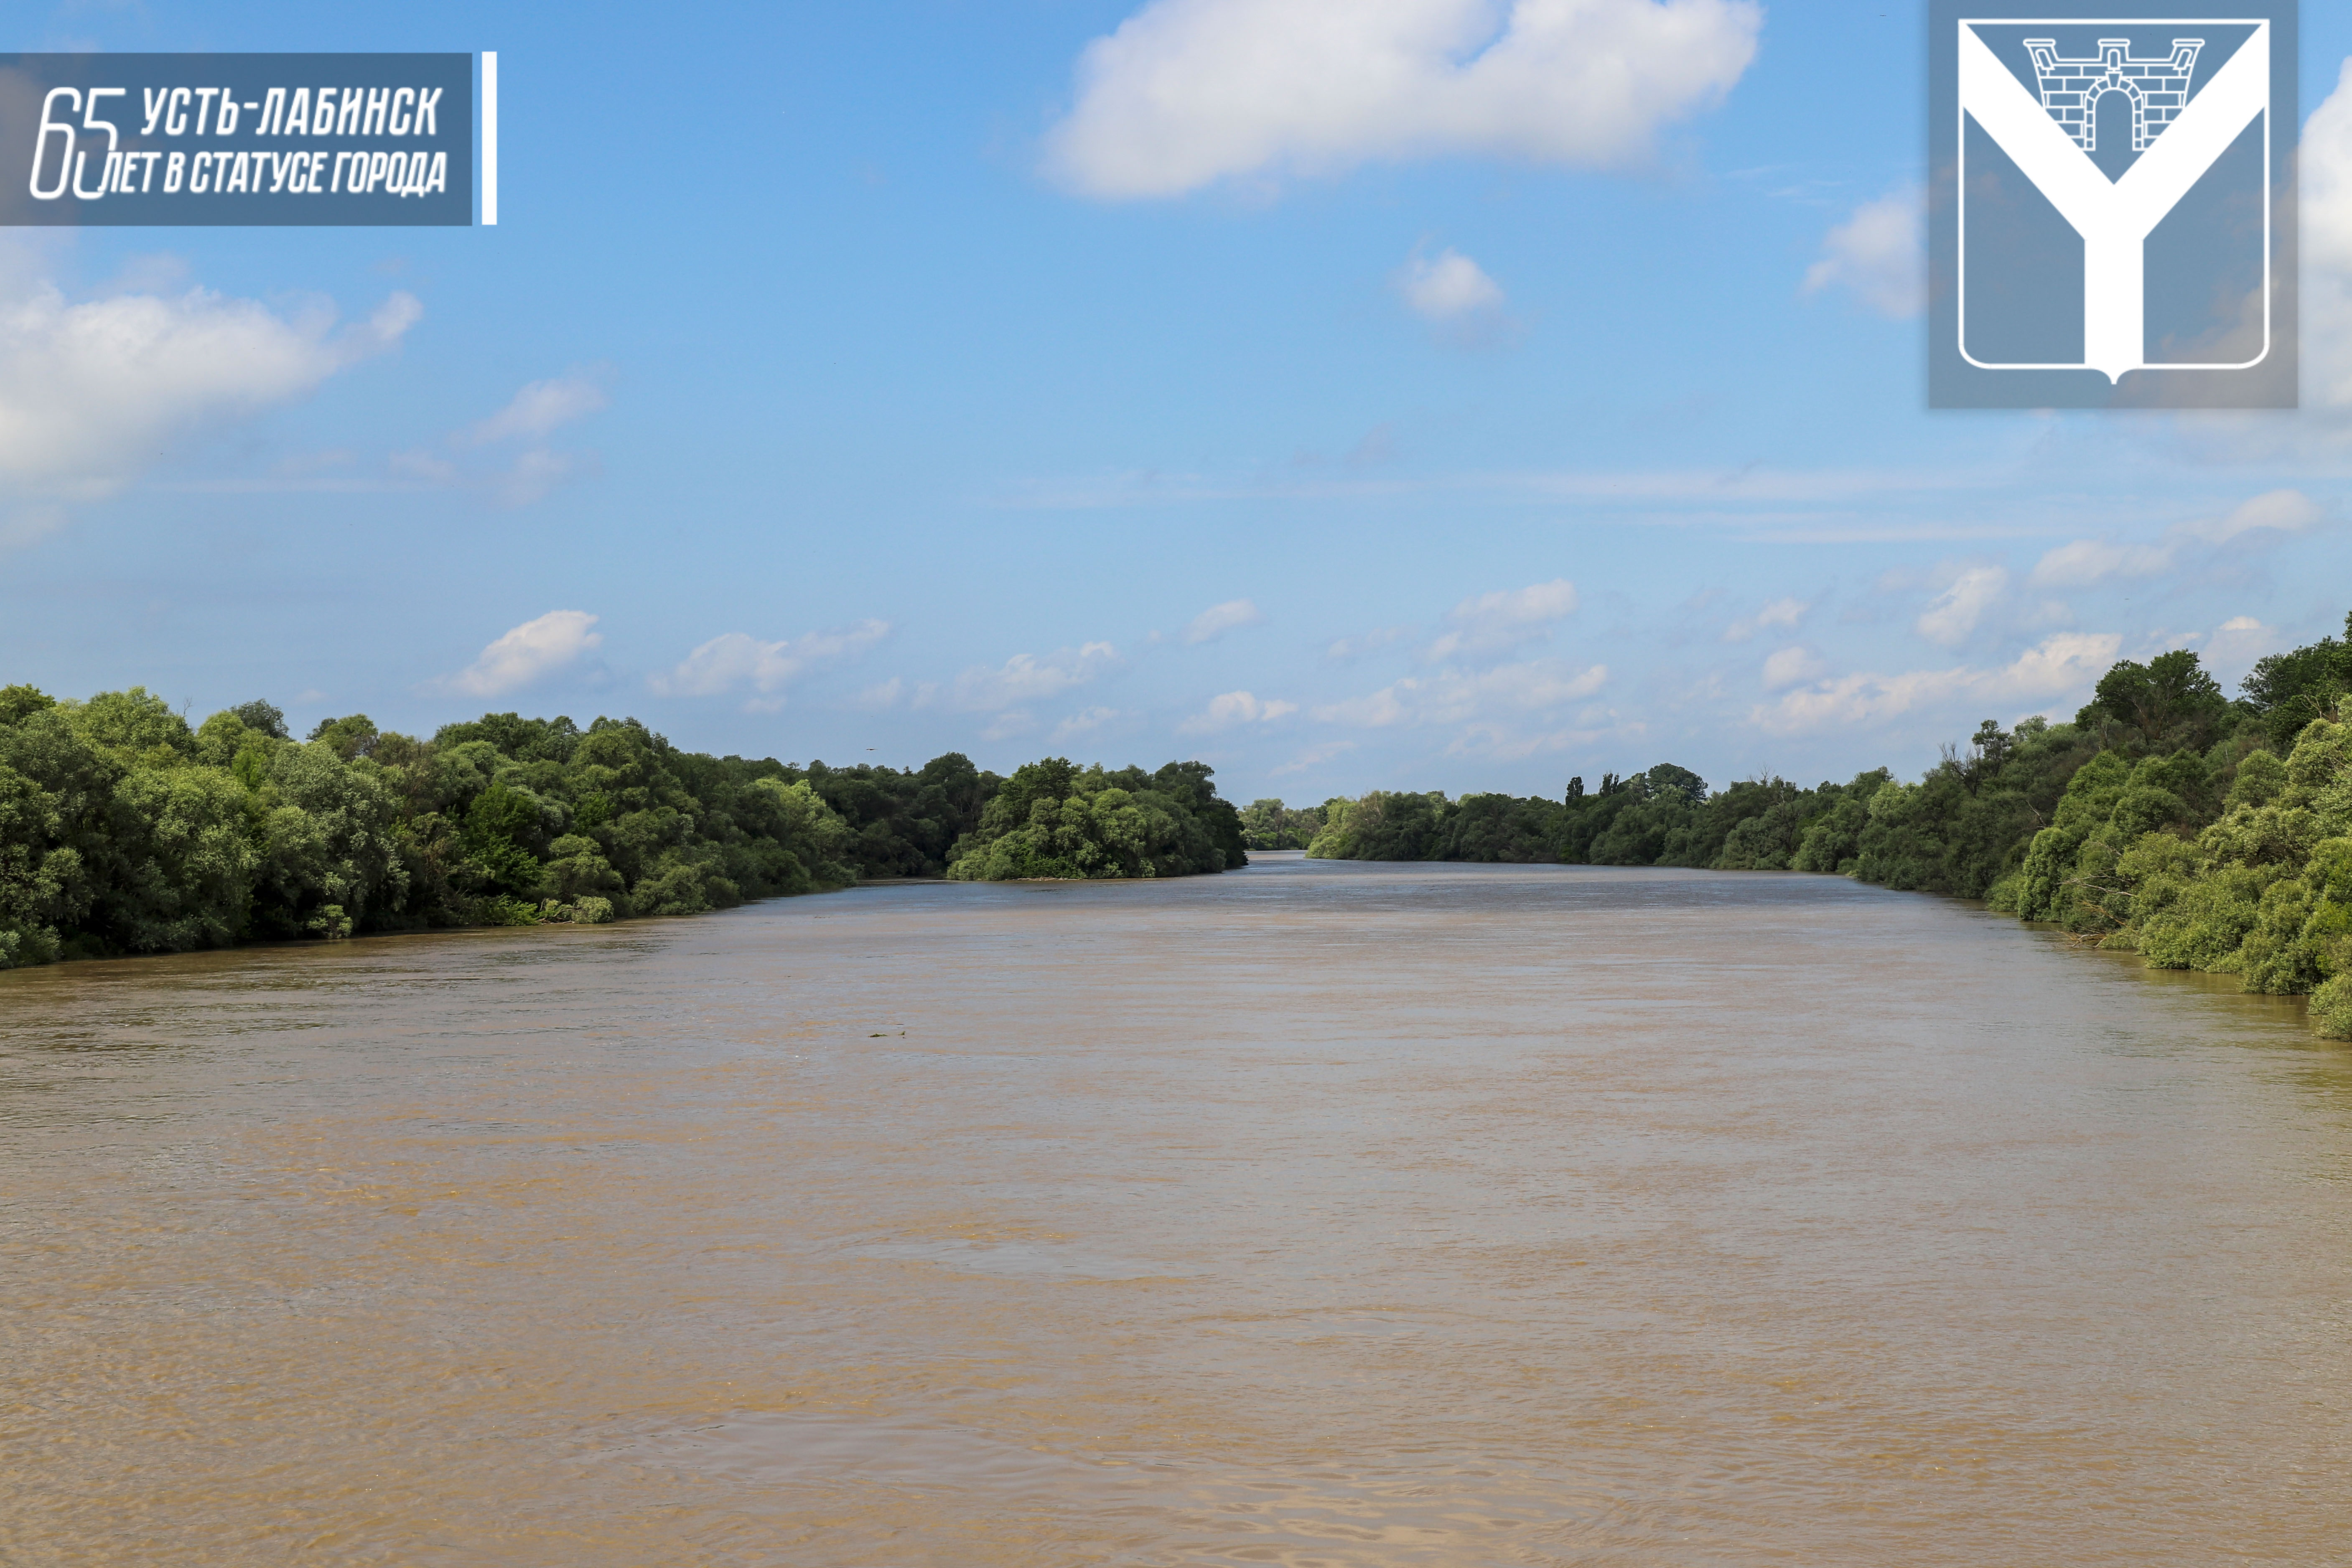 Кубань уровень воды в реке сегодня краснодар. Крокодил в реке Кубань.